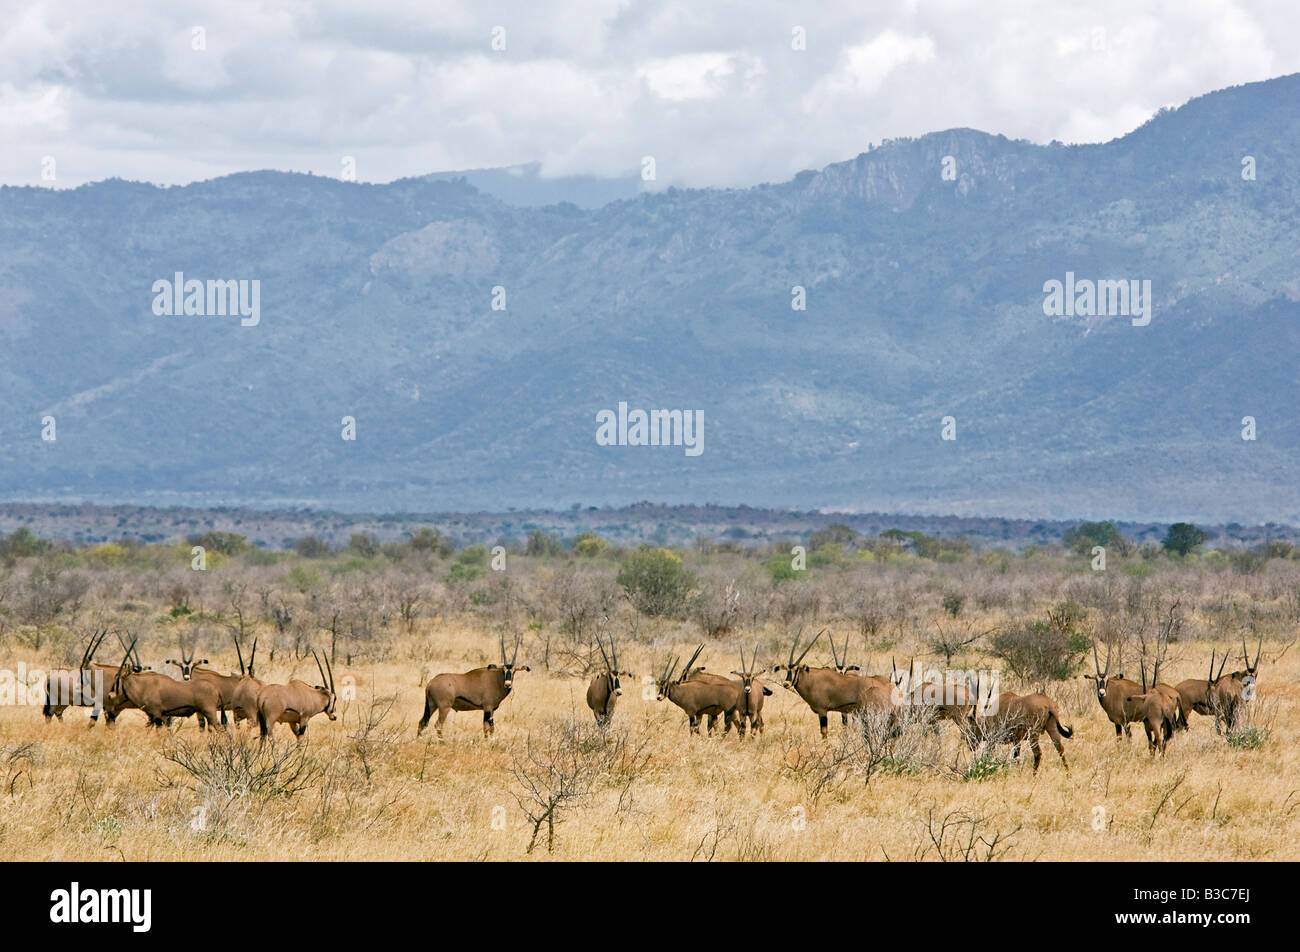 Au Kenya, le parc national de Tsavo Ouest. Un troupeau d'oryx à longues franges sur les plaines arides de l'Ouest de Tsavo National Park avec le tape montagne dominant le paysage. Banque D'Images